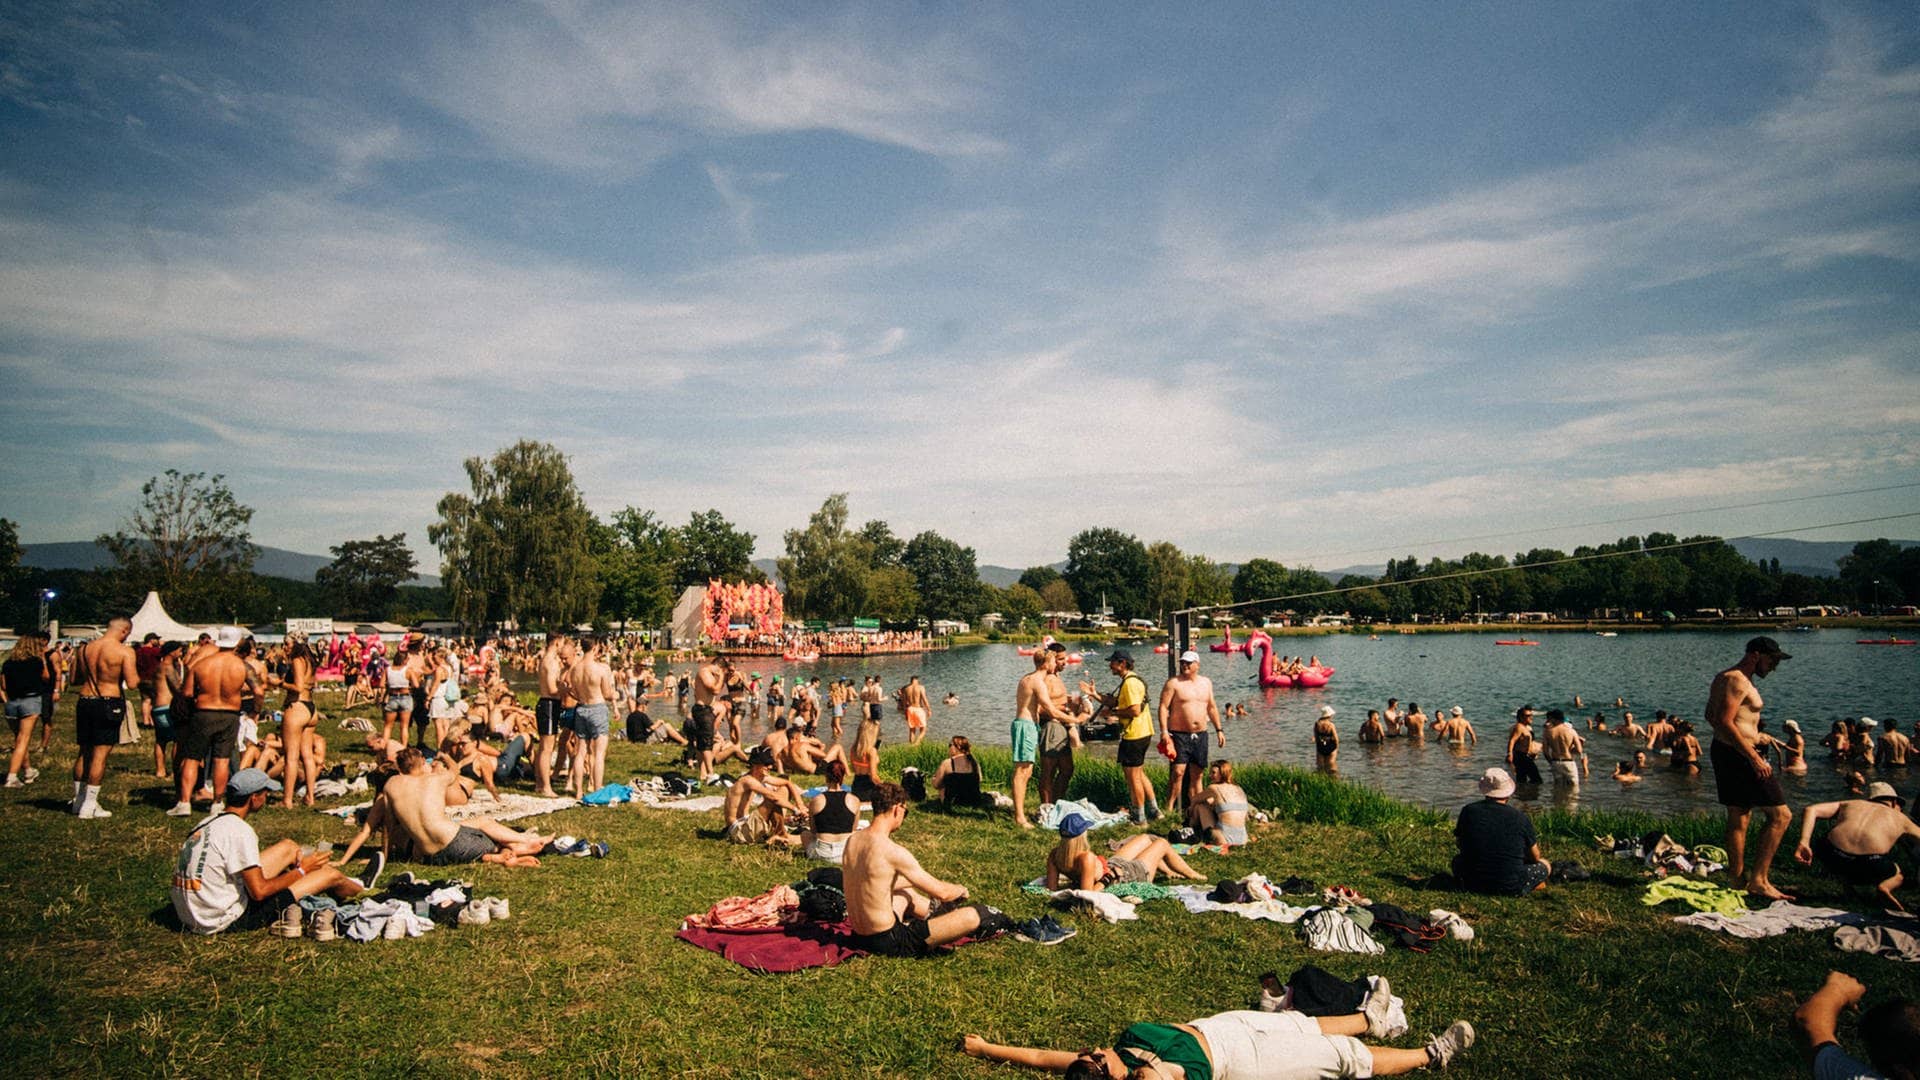 Das Sea You Festival 2023 am Tunisee in Freiburg: Mit 30 Grad bietet das Festival gleich zu Beginn einen wunderschönen Sommertag für die Besucher.